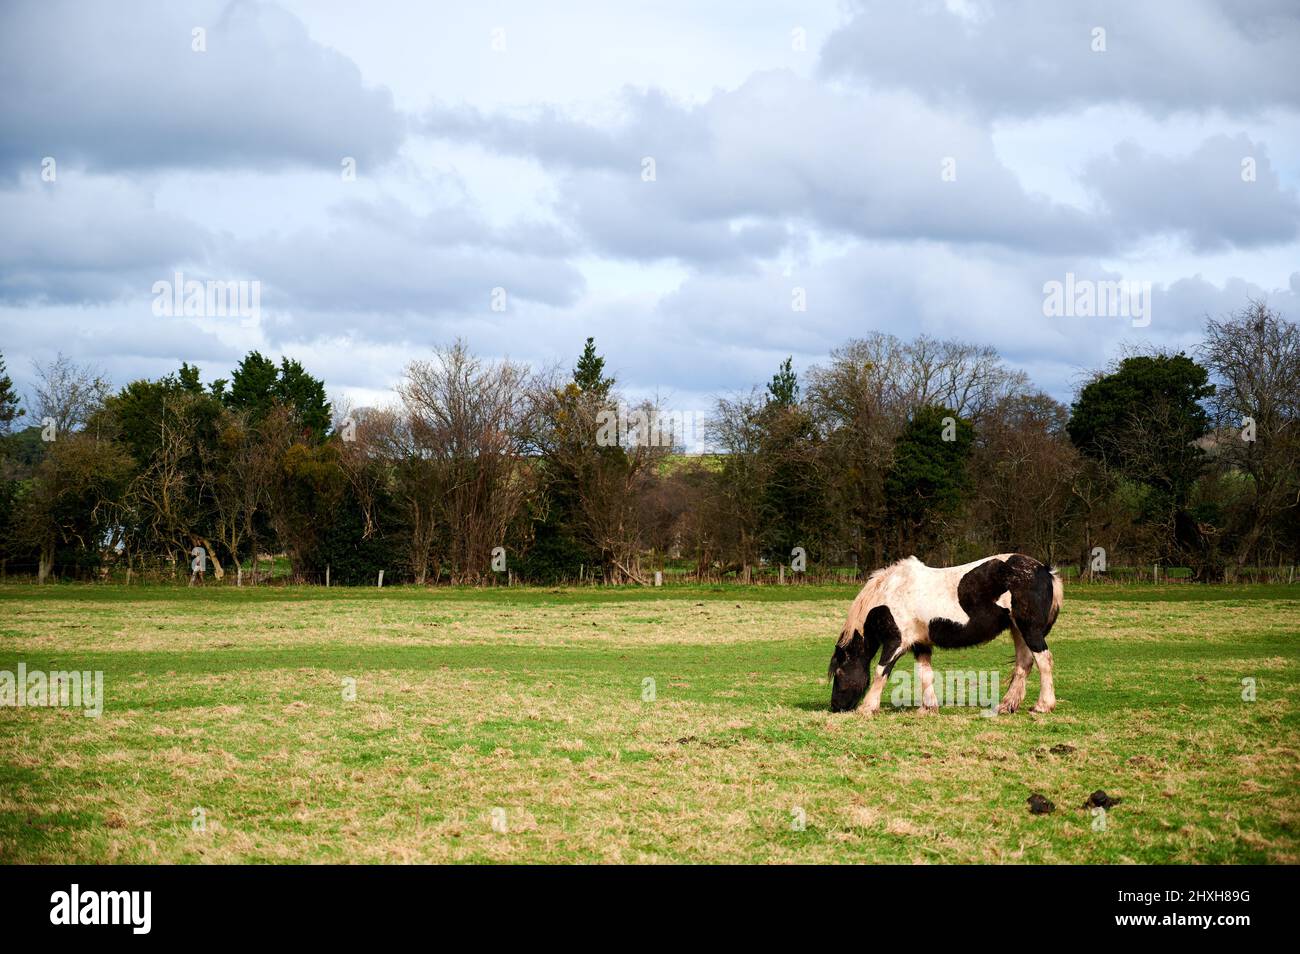 Ein einziges schwarz-weißes Pferd, das an bewölktem Tag Gras auf einem Feld frisst Stockfoto